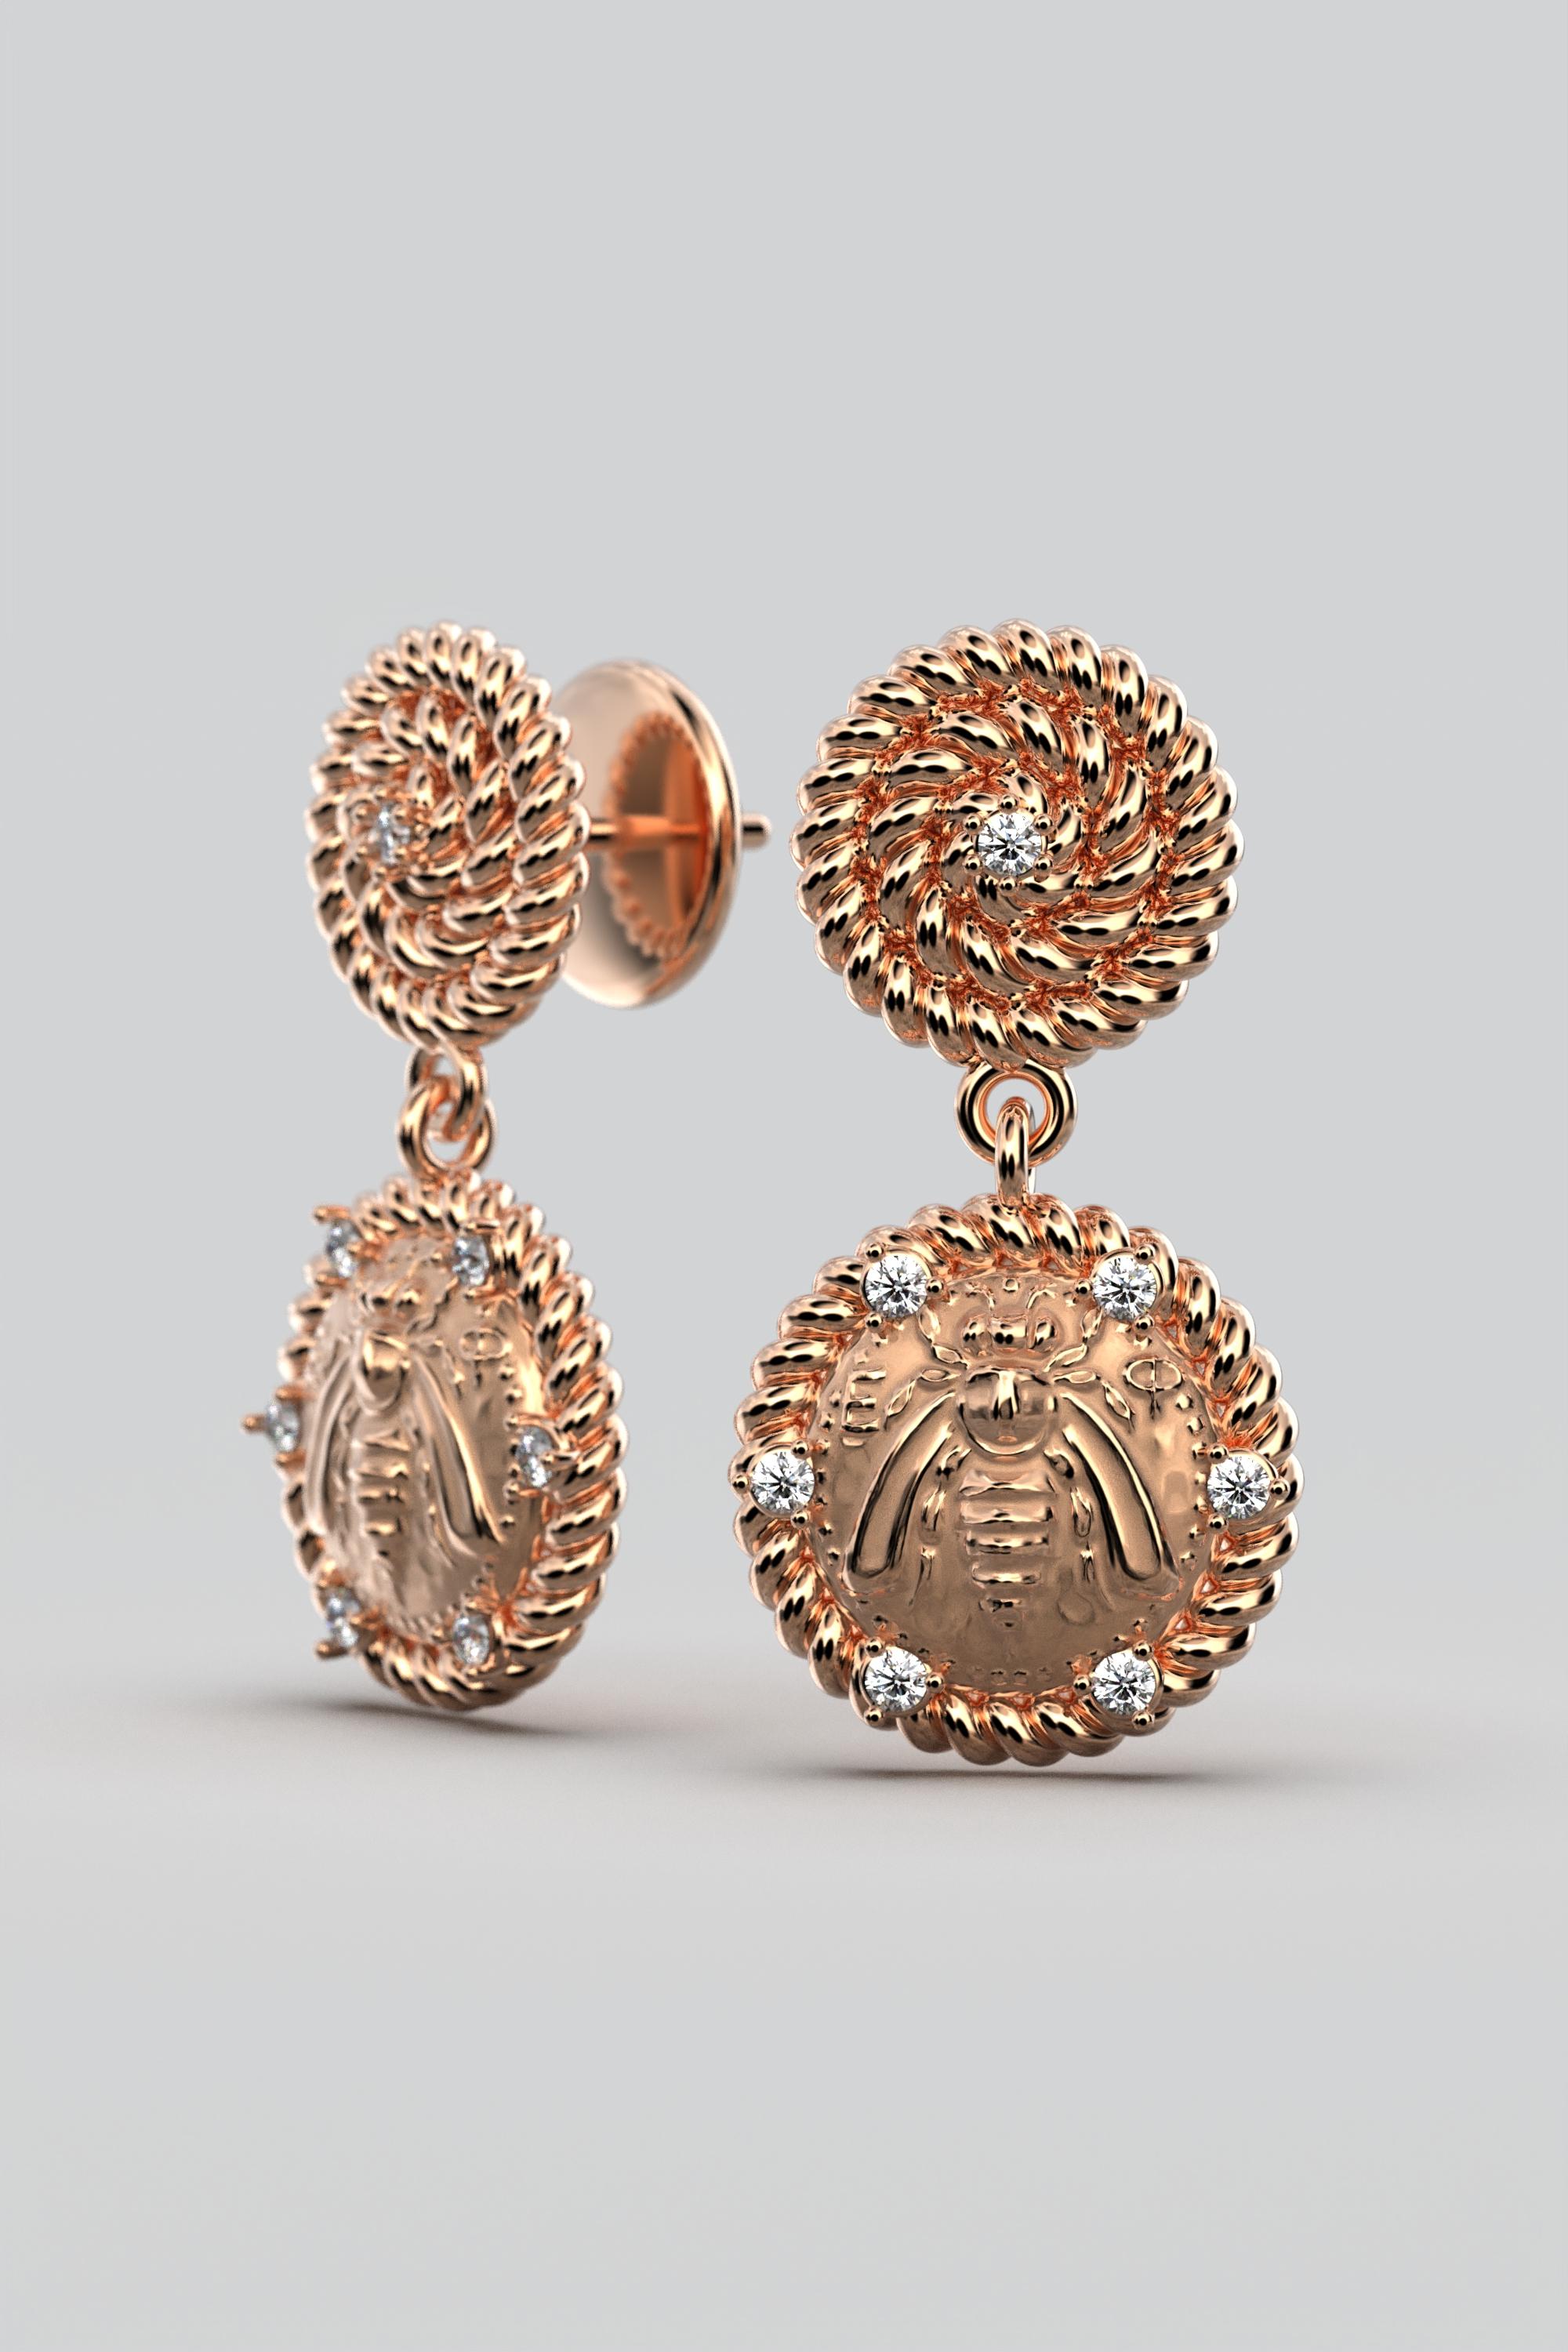 Italian Jewelry  14k Gold Dangle Earrings With Diamonds  Bee Earrings  For Sale 3